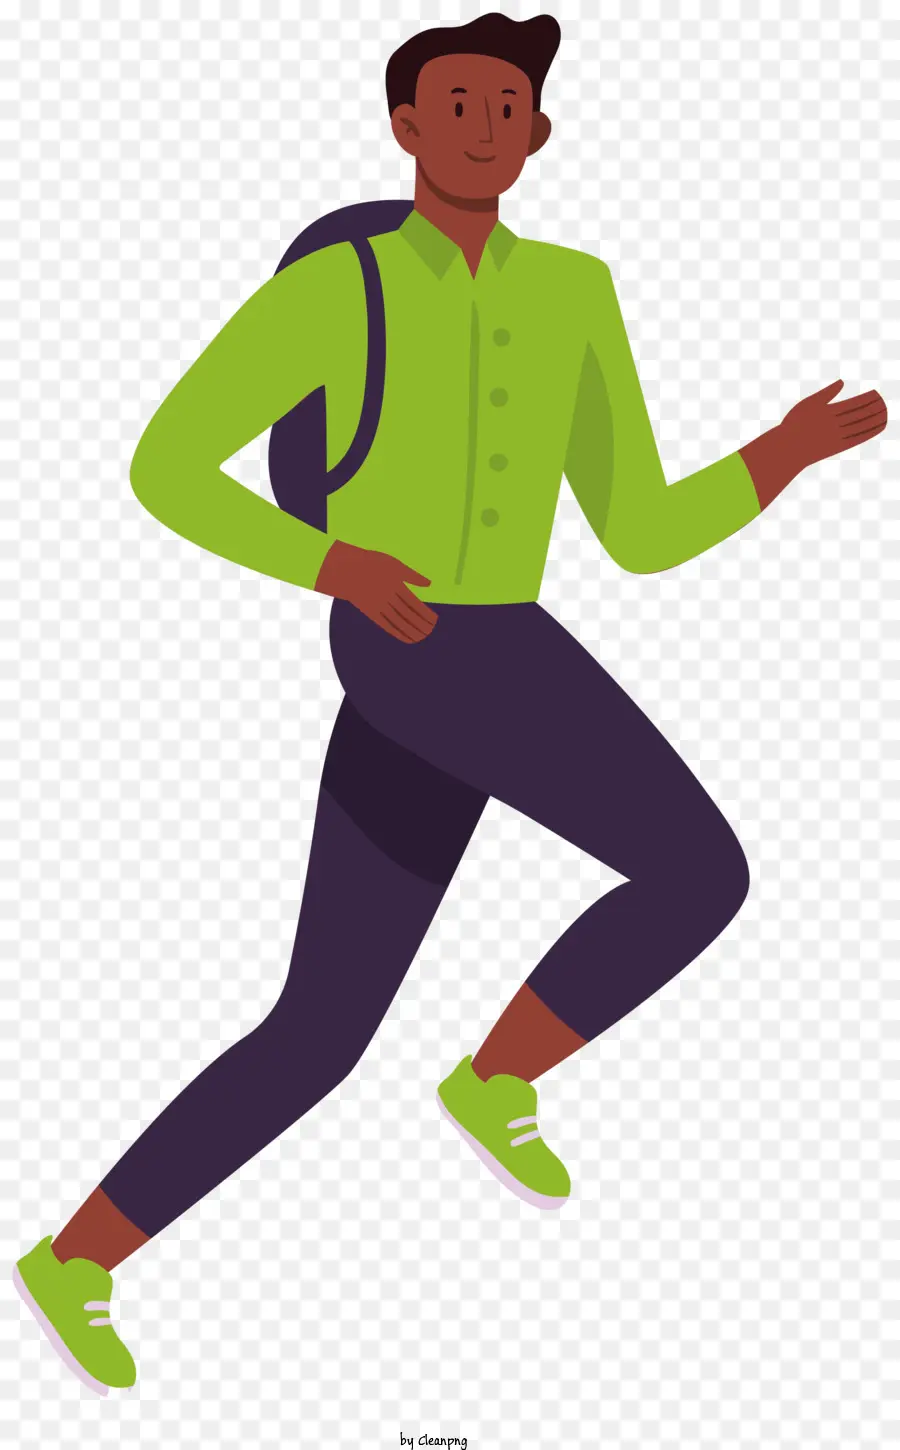 Running Man Backpack Green Shirt Pantaloni neri Scarpe nere - Uomo che corre con lo zaino, indossa una camicia verde